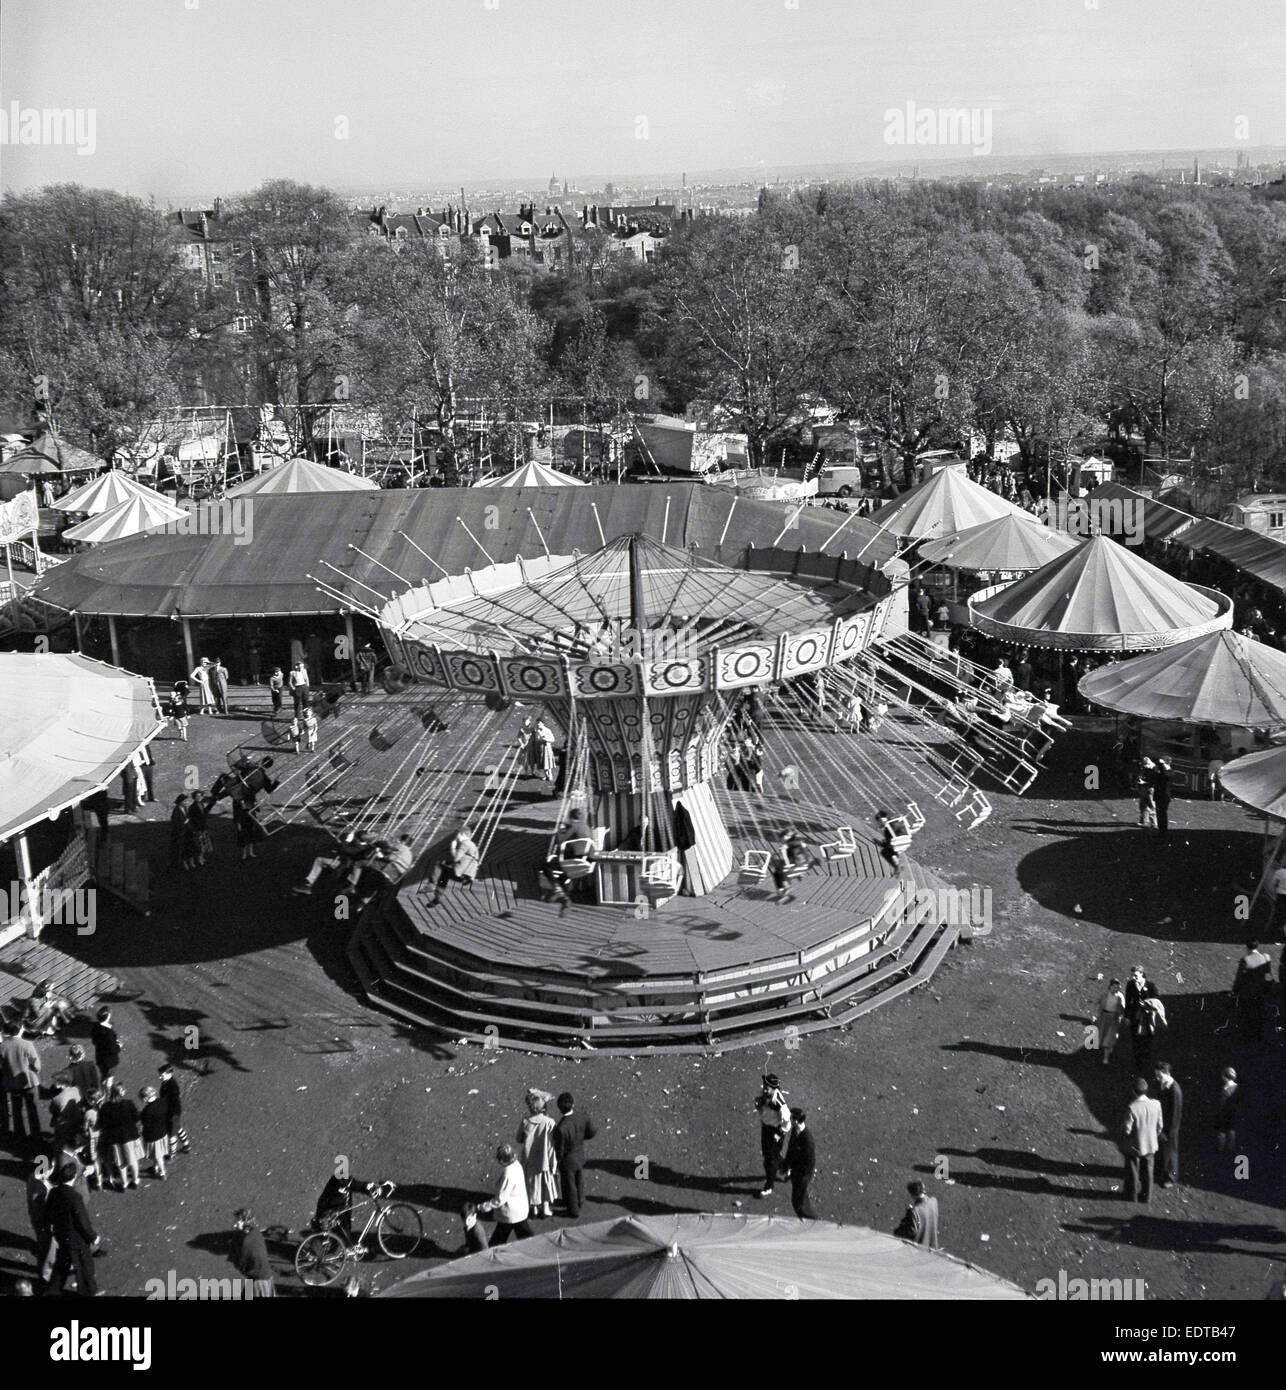 1950, histórico, vista aérea de un parque de atracciones de paseo. Foto de stock